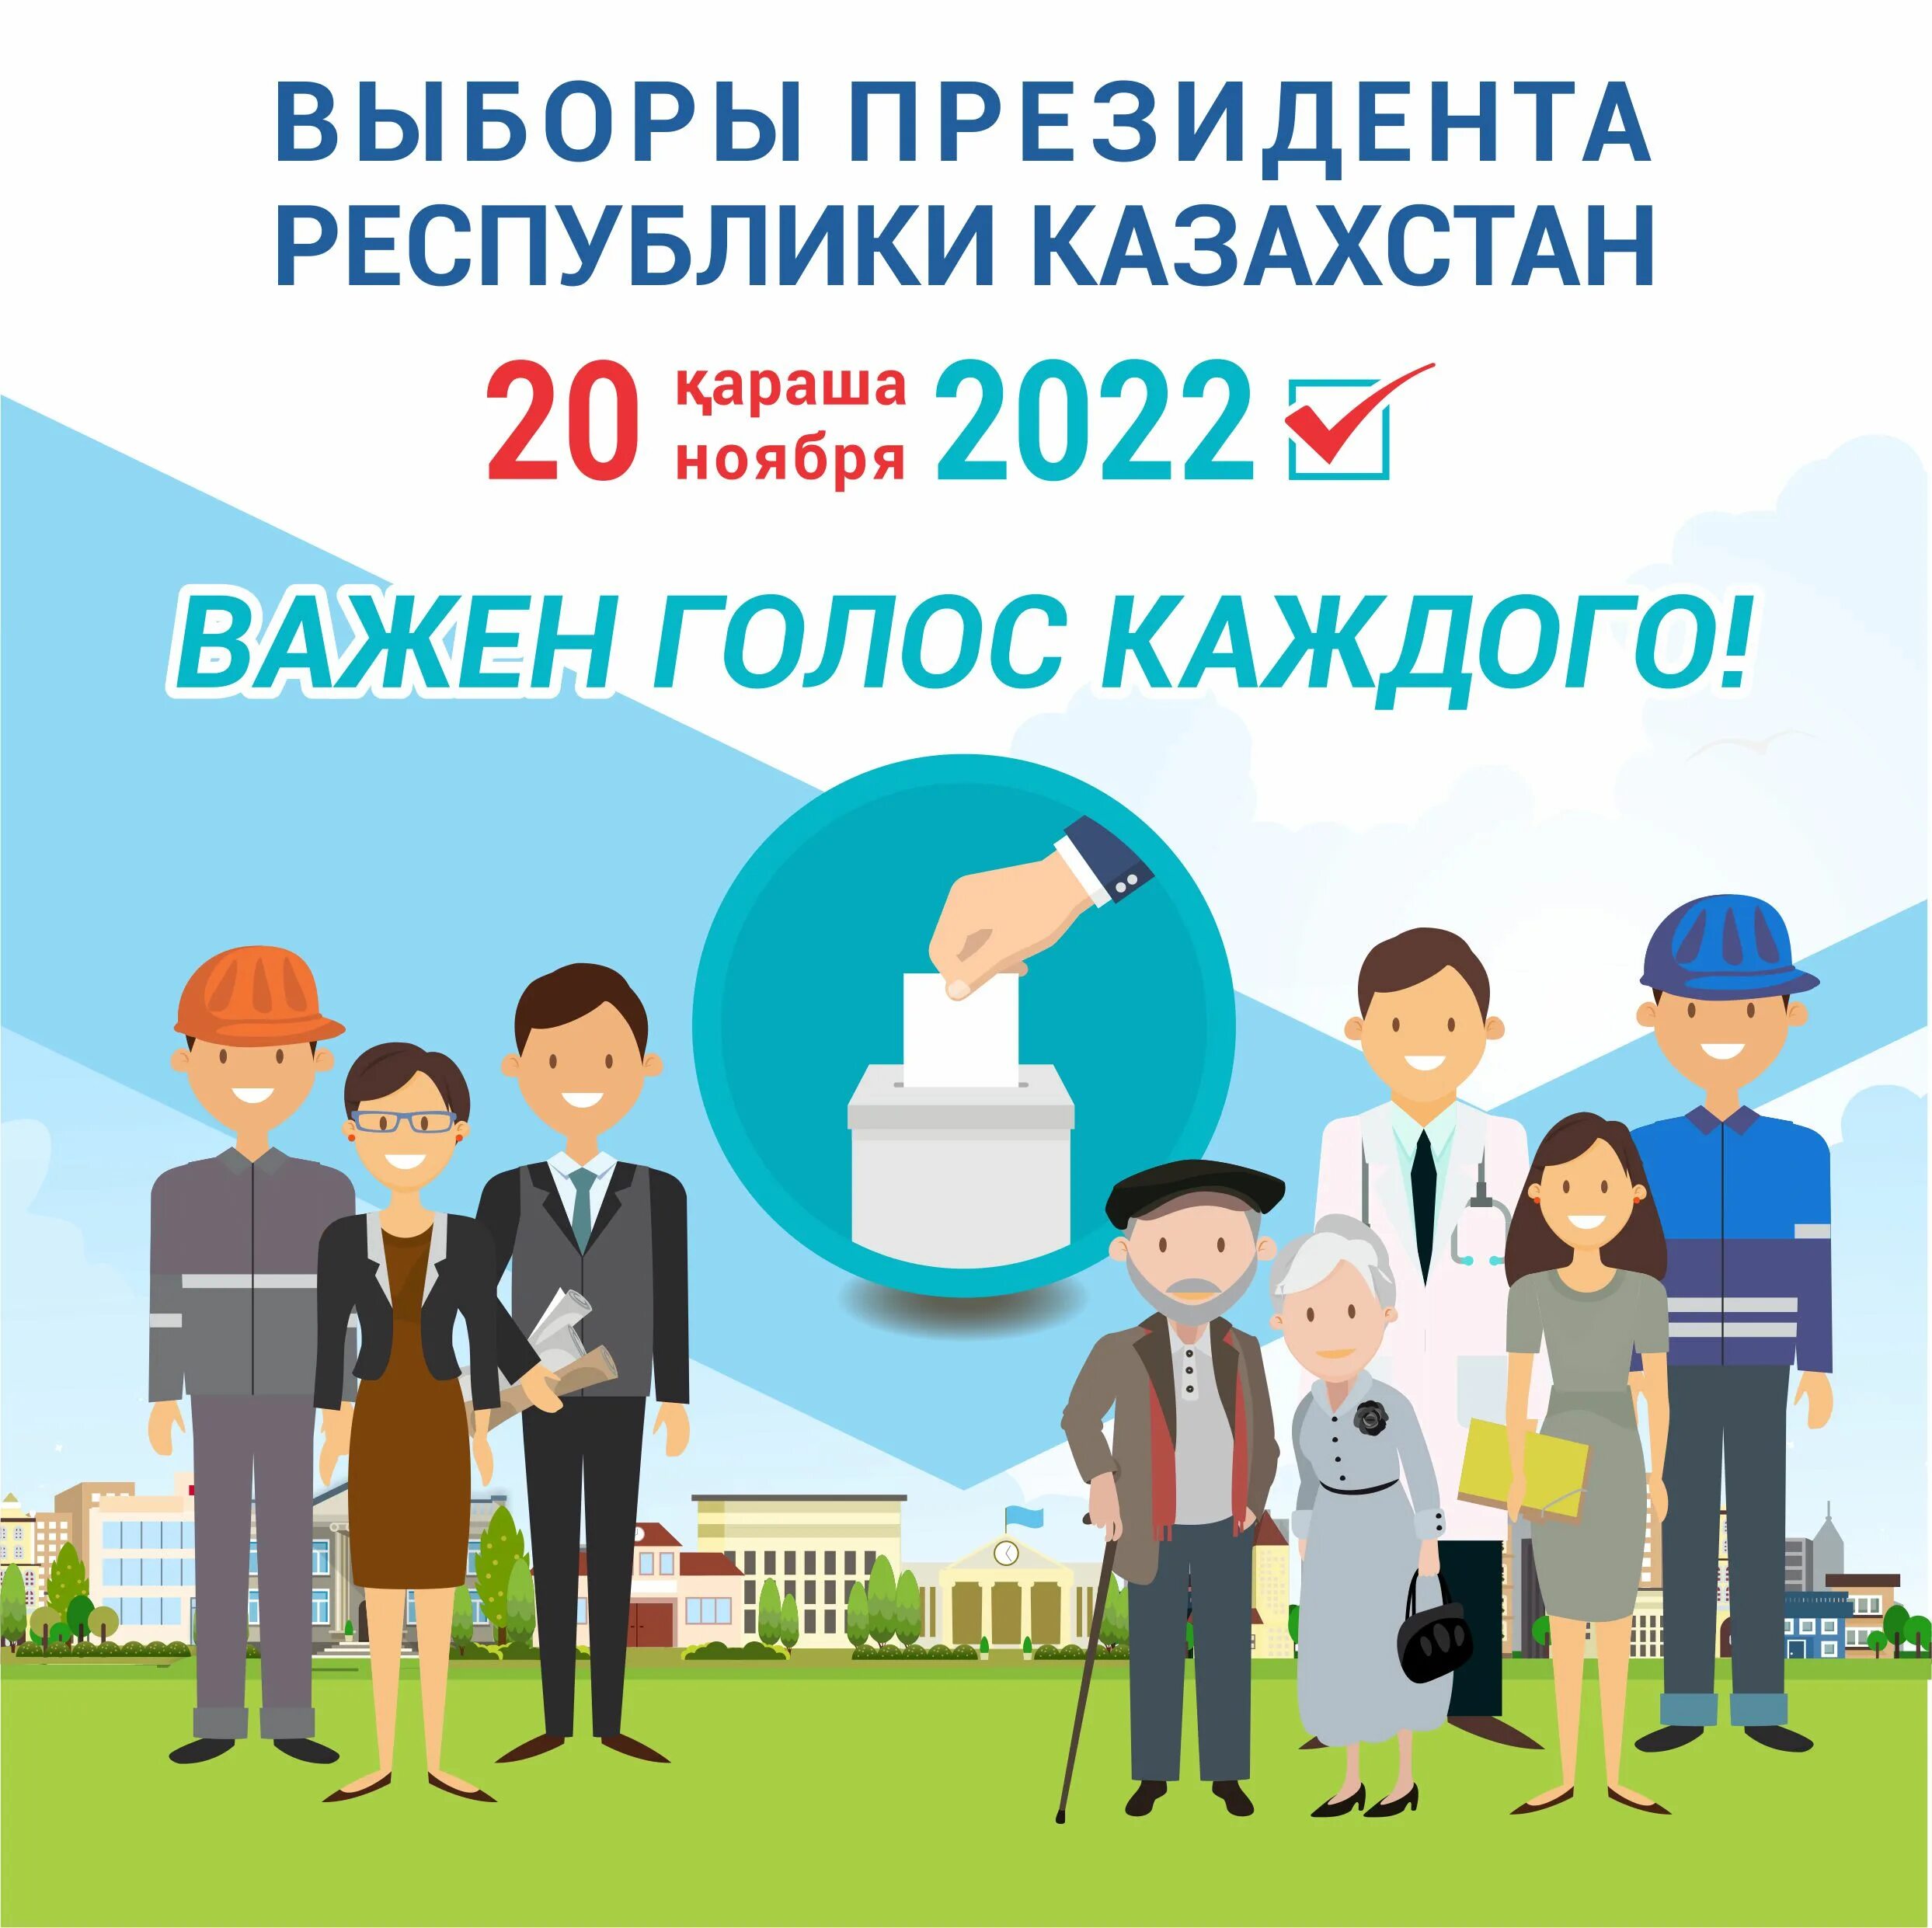 Информация про выборы. Выборы президента Казахстана. Выборы в Казахстане в 2022. Президентские выборы в Казахстане 2022.